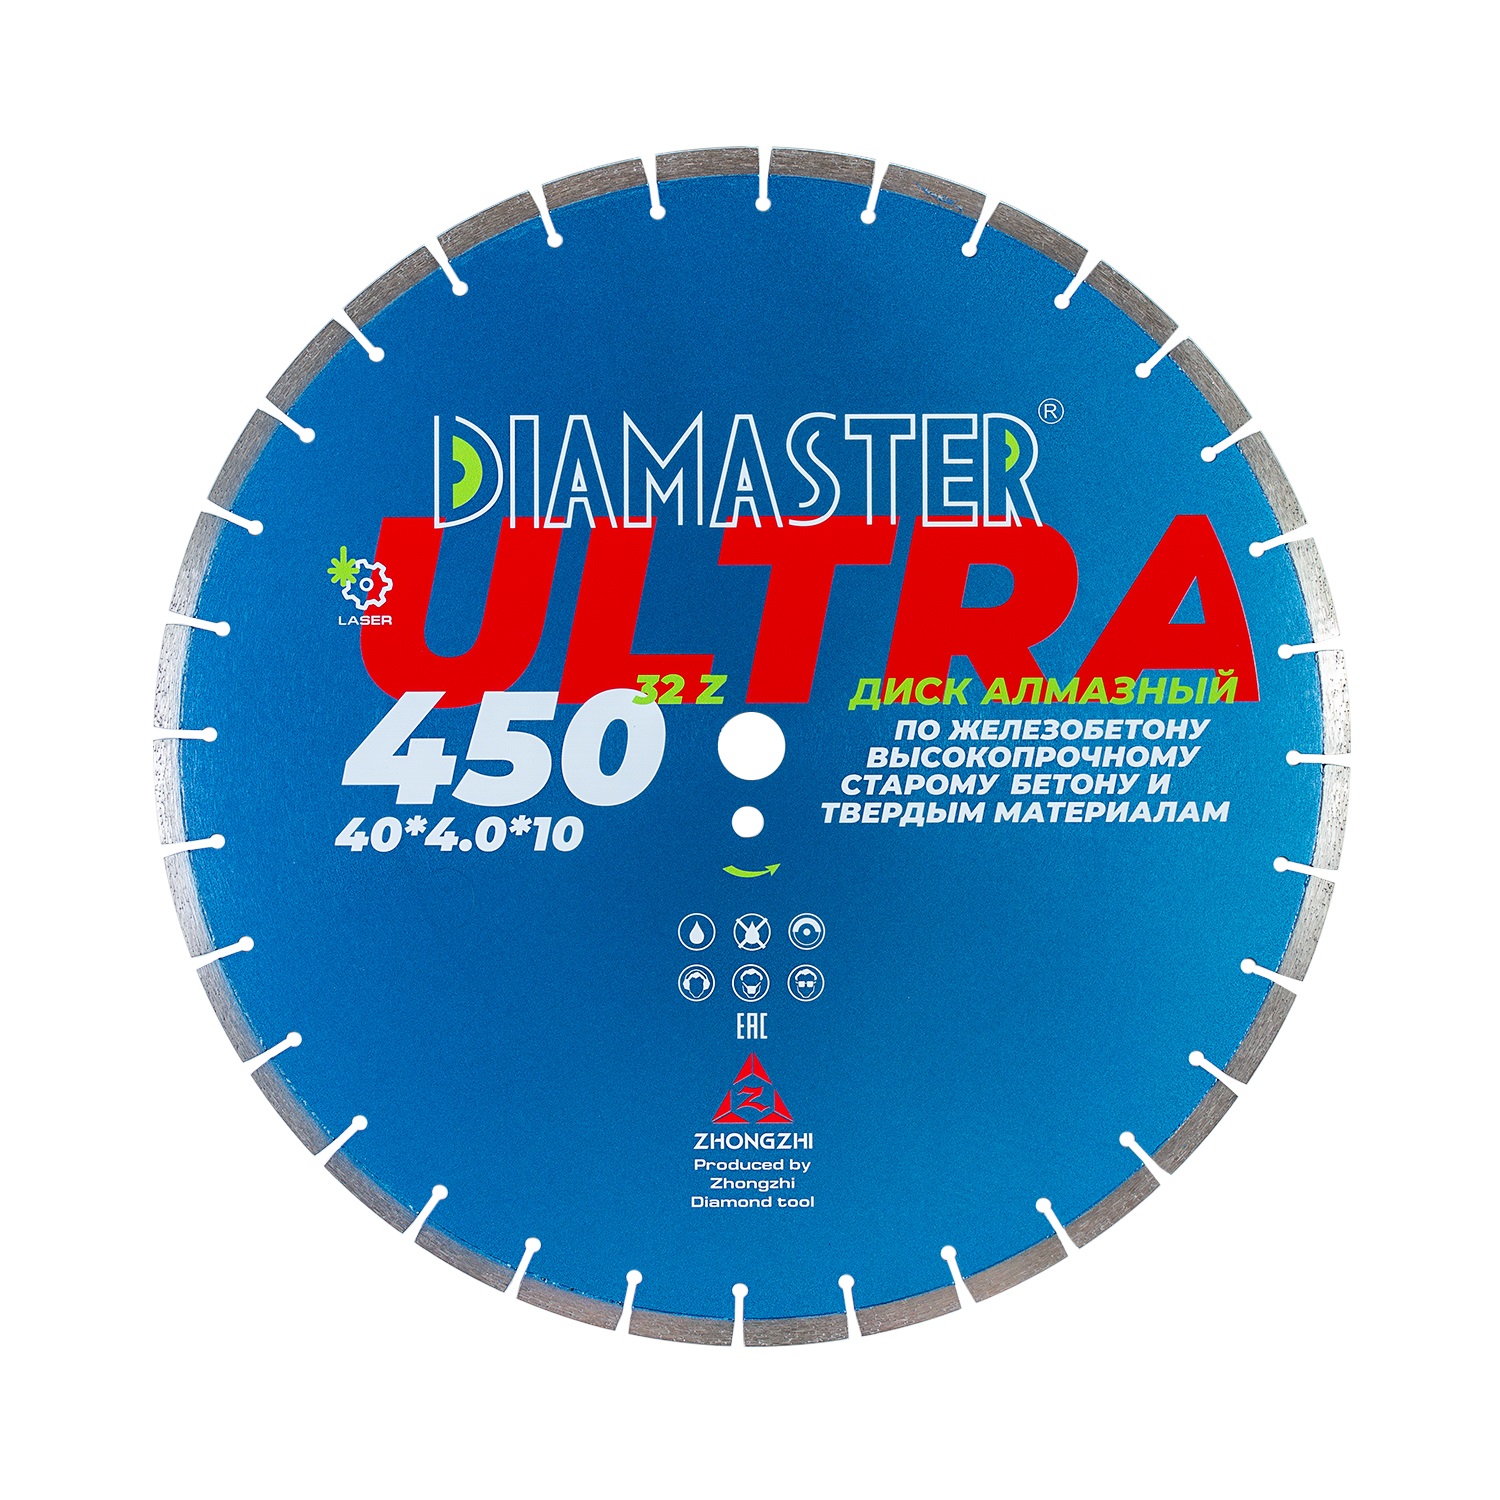 Диск сегментный Laser ULTRA д.450*2,8*25,4 (40*4,0*10)мм | 32z/железобетон/wet/dry DIAMASTER диск сегментный laser ultra д 350 2 2 25 4 20 0 40 3 2 10 мм 24z железобетон wet dry diamaster